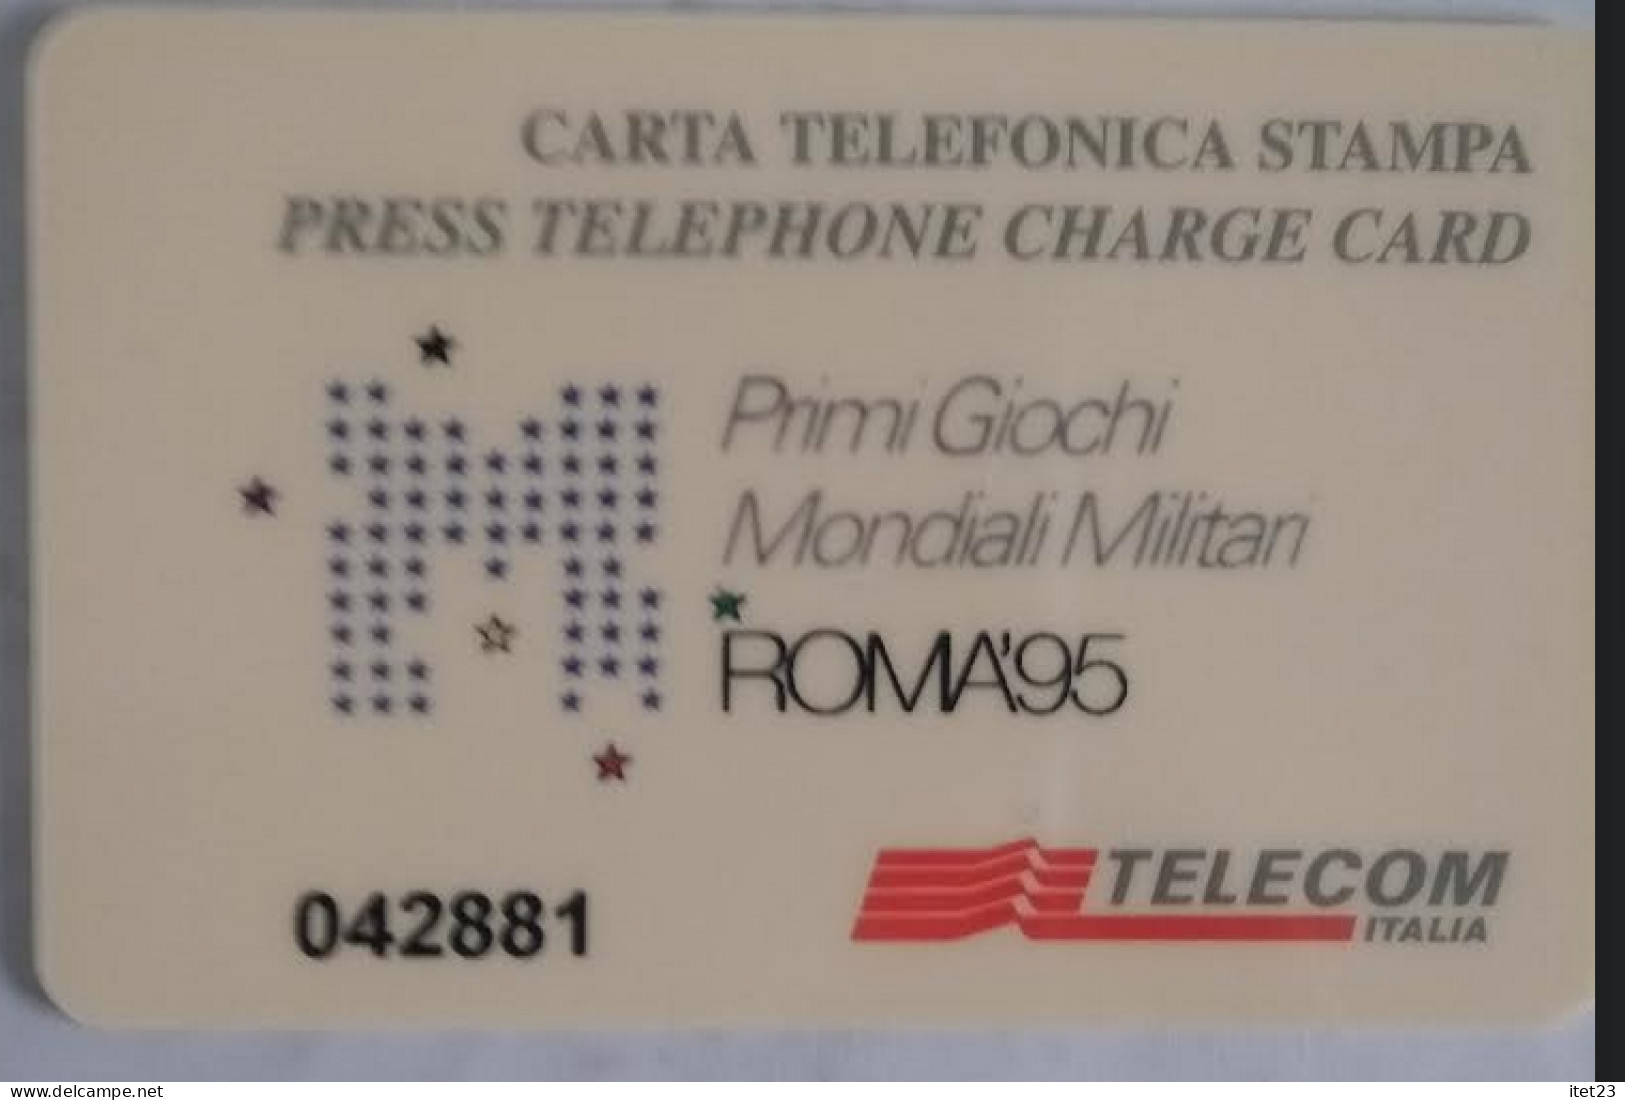 SCHEDA TELEFONICA ITALIANA - USI SPECIALI-STAMPA- ROMA 95- PRIMI GIOCHI MONDIALI MILITARI C&C 4048 - [4] Sammlungen